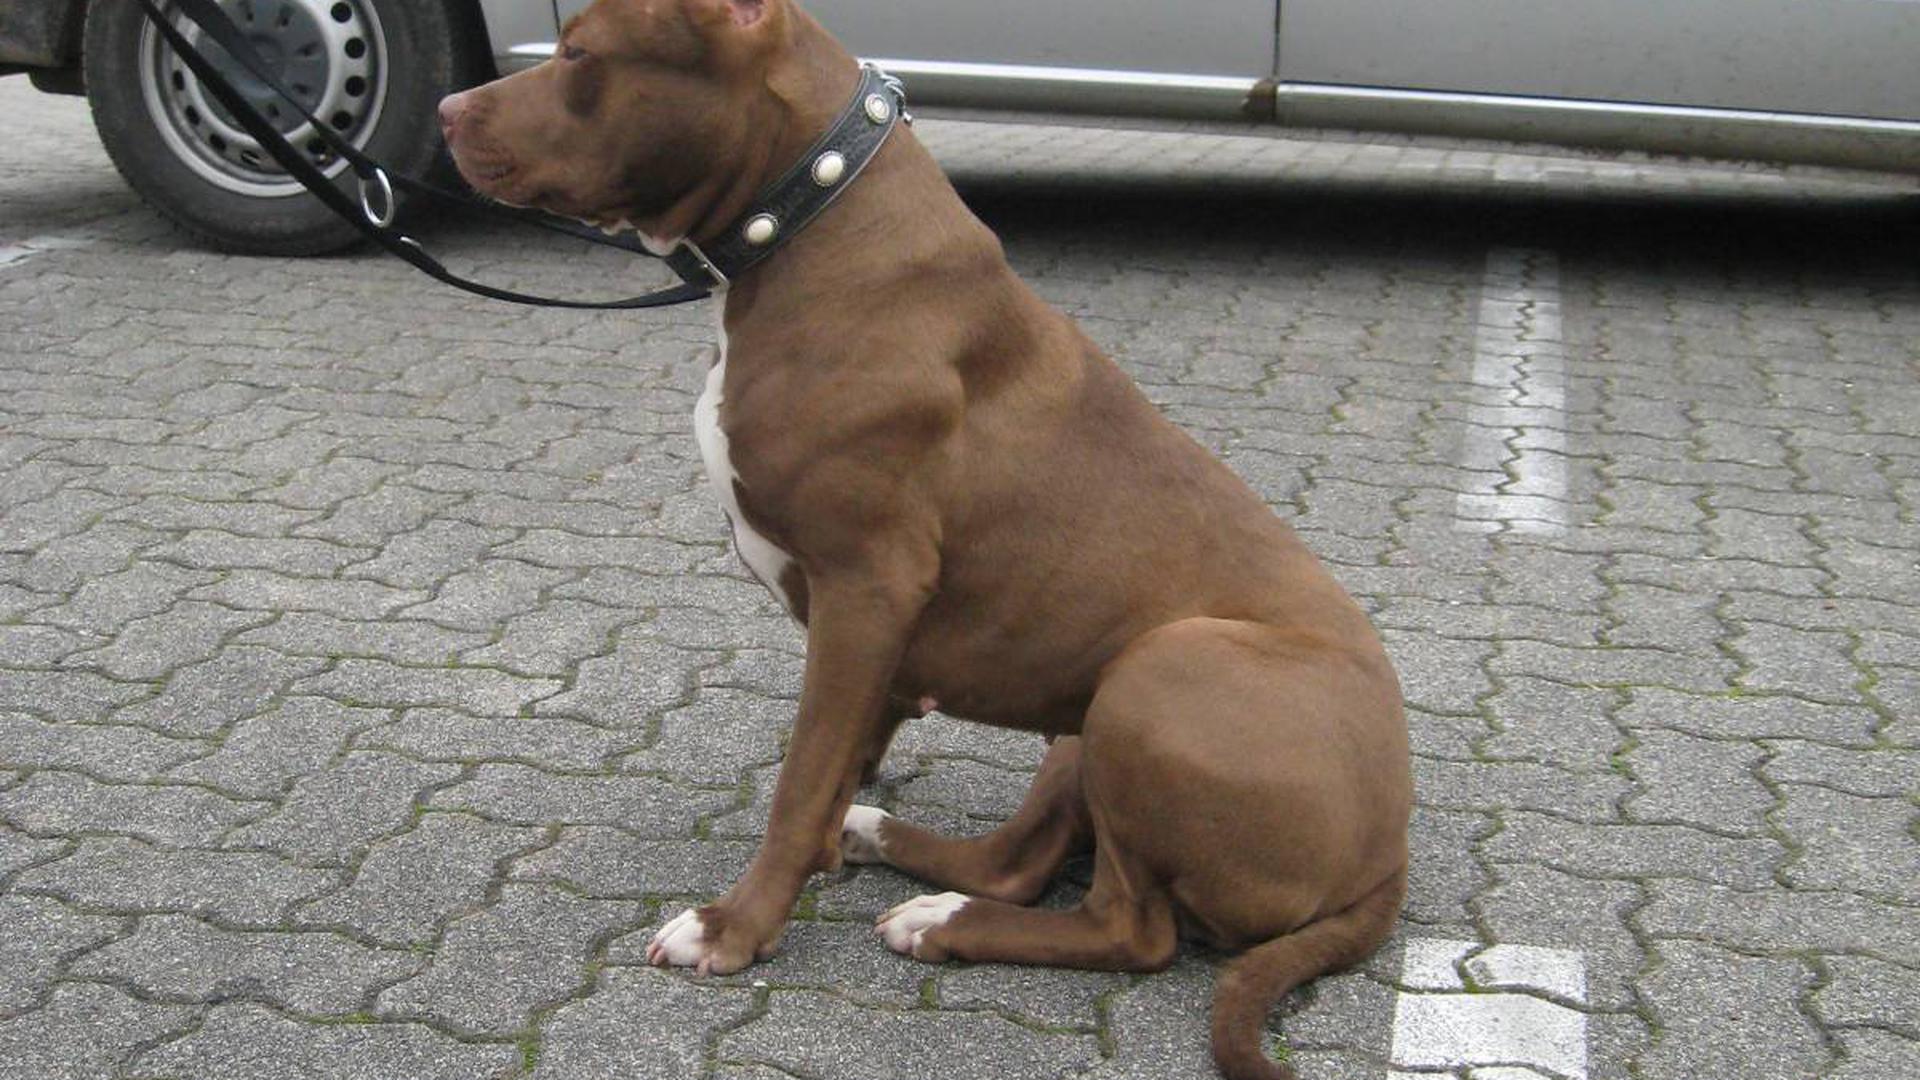 American-Staffordshire-Terrier von der Polizei beschlagnahmt14.04.2010, BZ - OFB: Diese zwei beschlagnahmten Hunde müssen ins Tierheim. Polizei